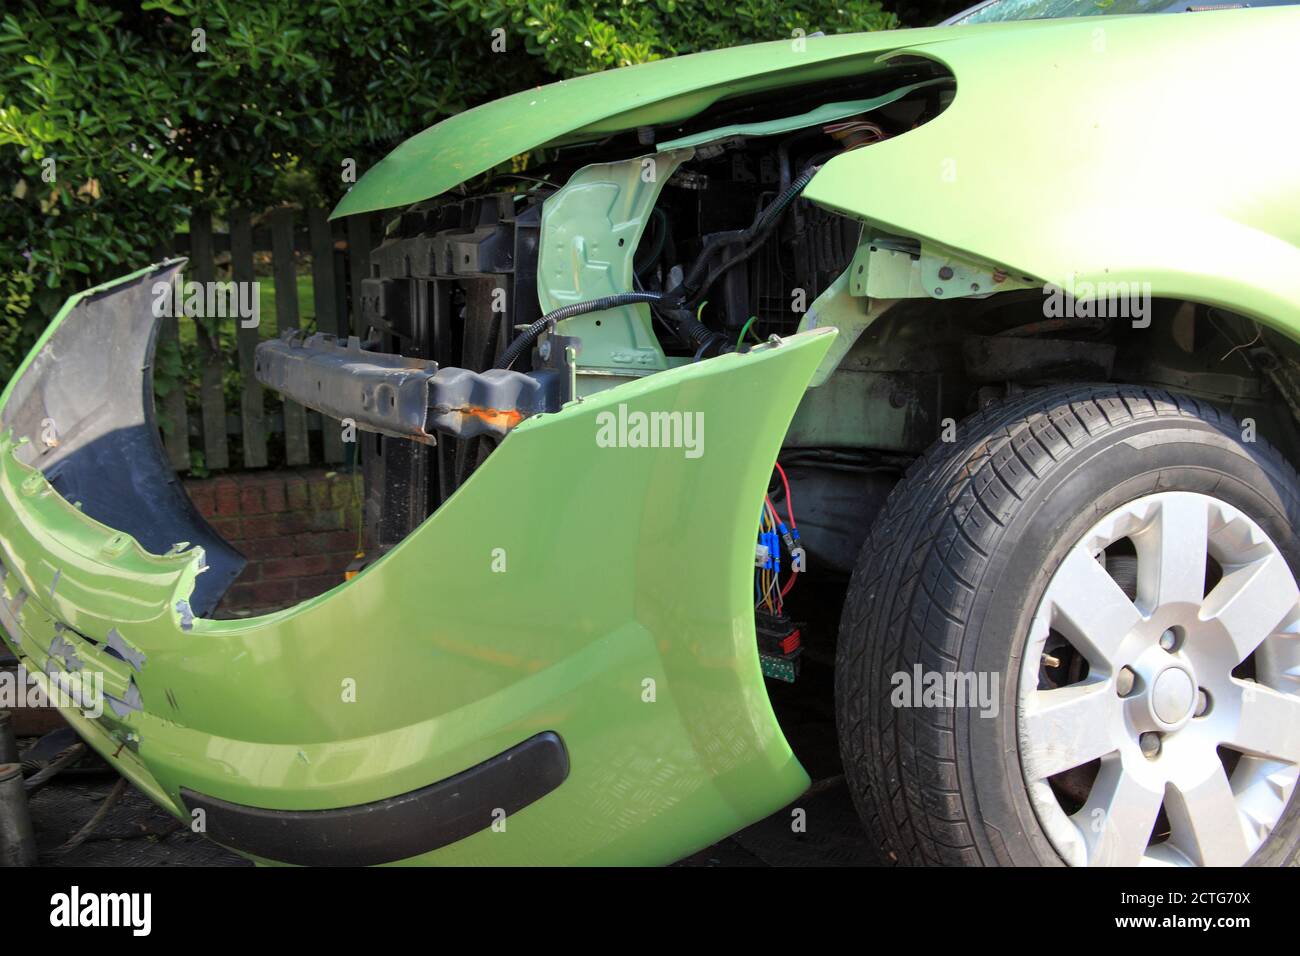 Une épave de voiture s'est heurté à un accident de véhicule qui le fera mener à une image de stock de réclamation d'entreprise d'assurance Banque D'Images